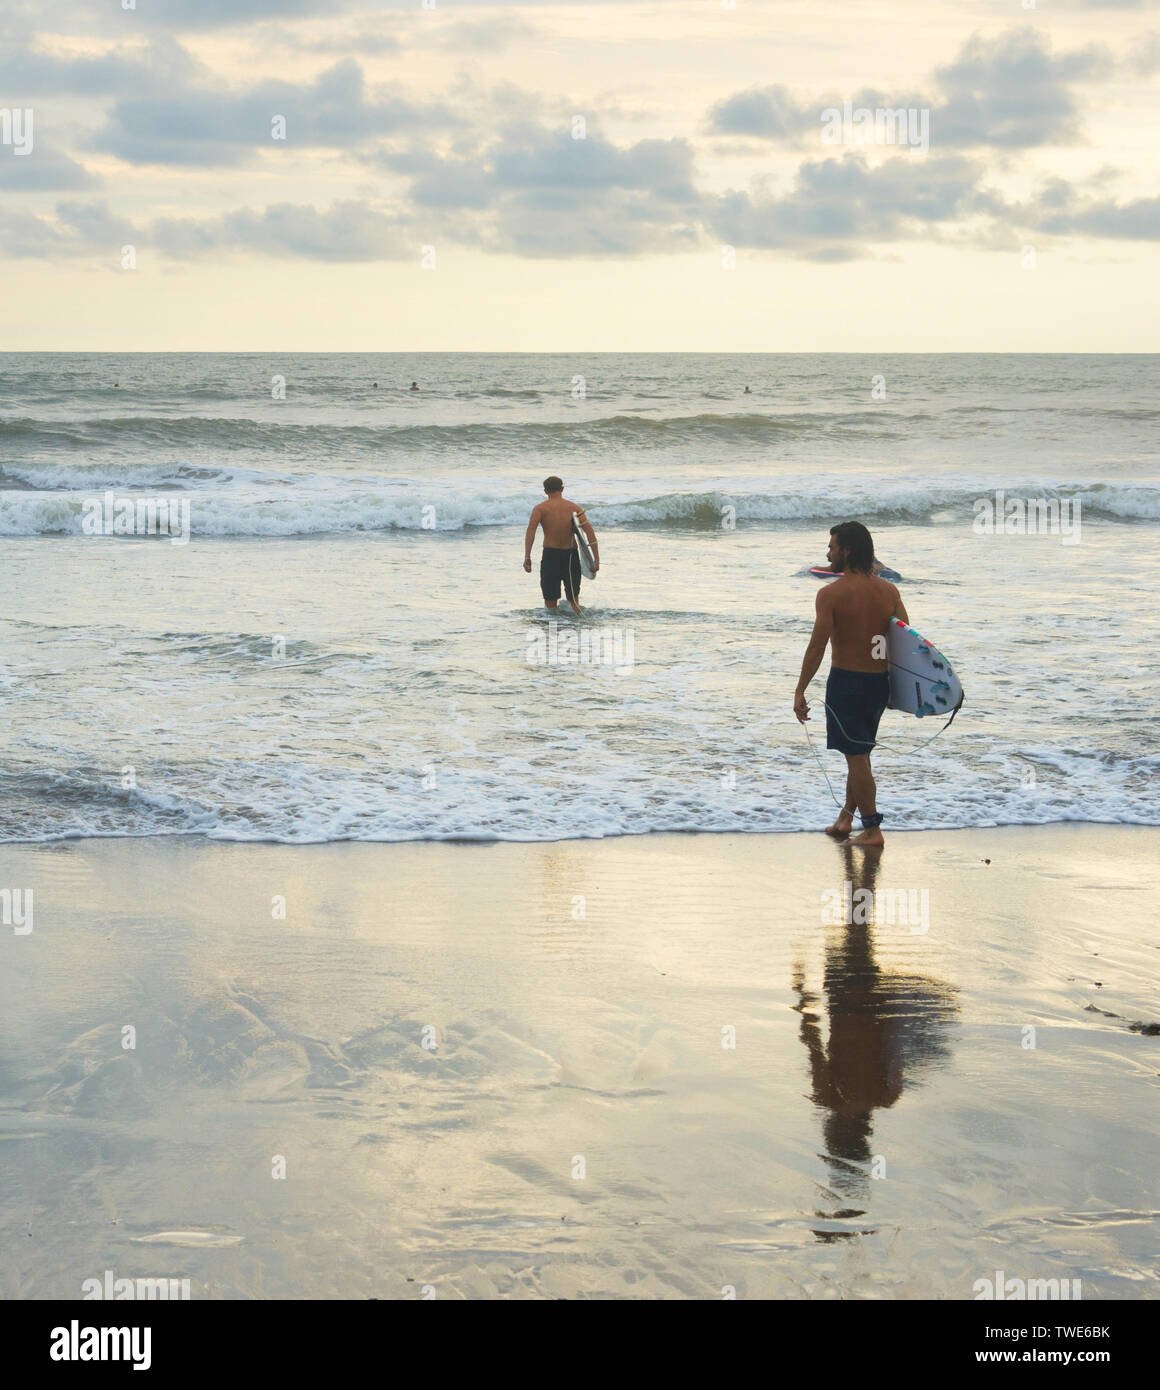 L'ÎLE DE BALI, INDONÉSIE - 12 février 2017 : les hommes avec des planches au coucher du soleil plage Océan surf session pour aller Banque D'Images